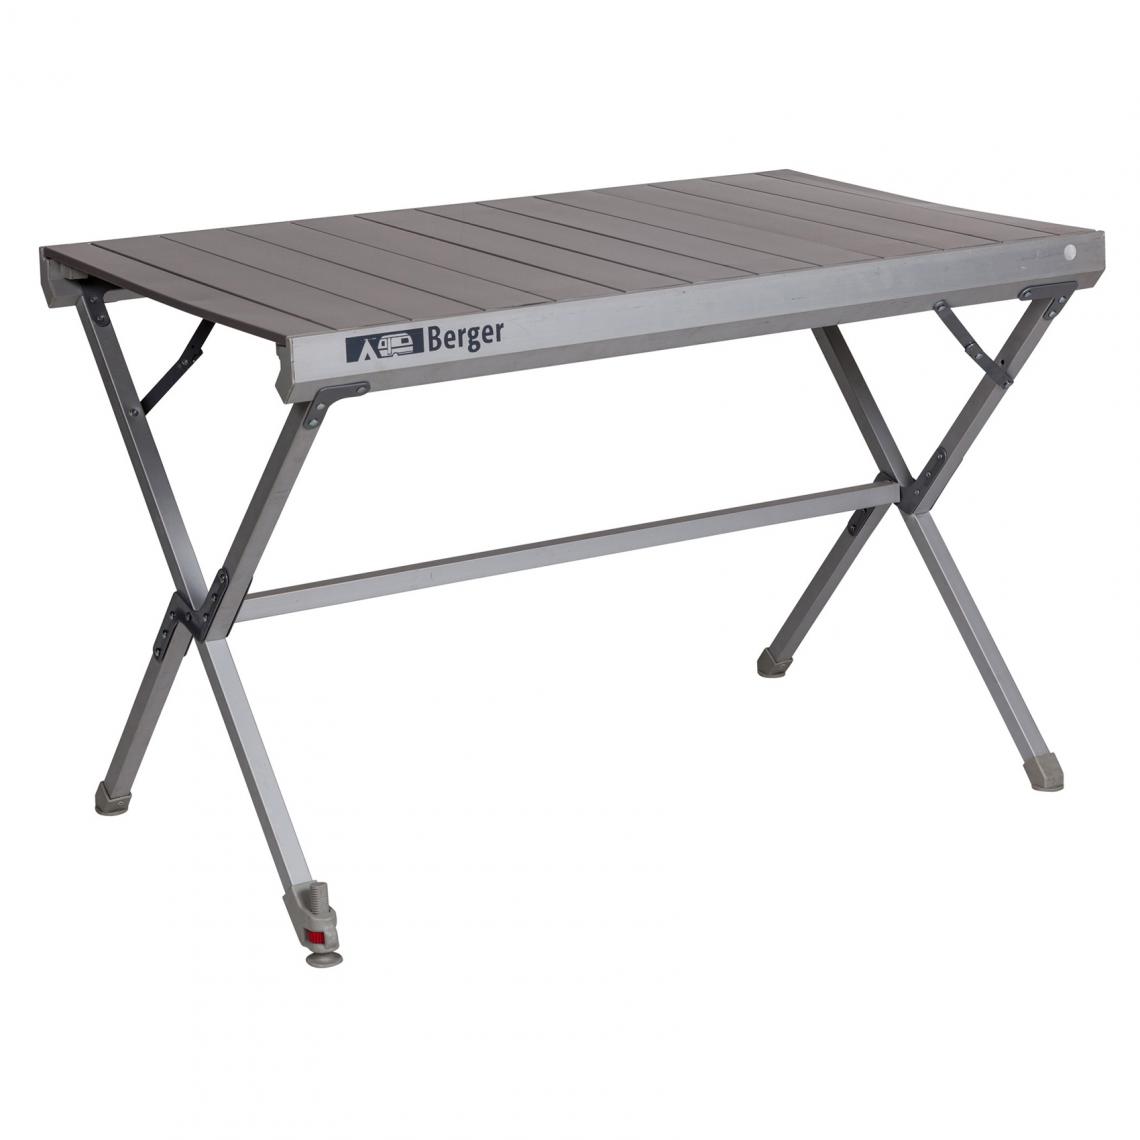 Alter - Table pliante en aluminium pour camping et pique-nique, coloris gris, 105 x 61 xh 70 cm - Tables à manger